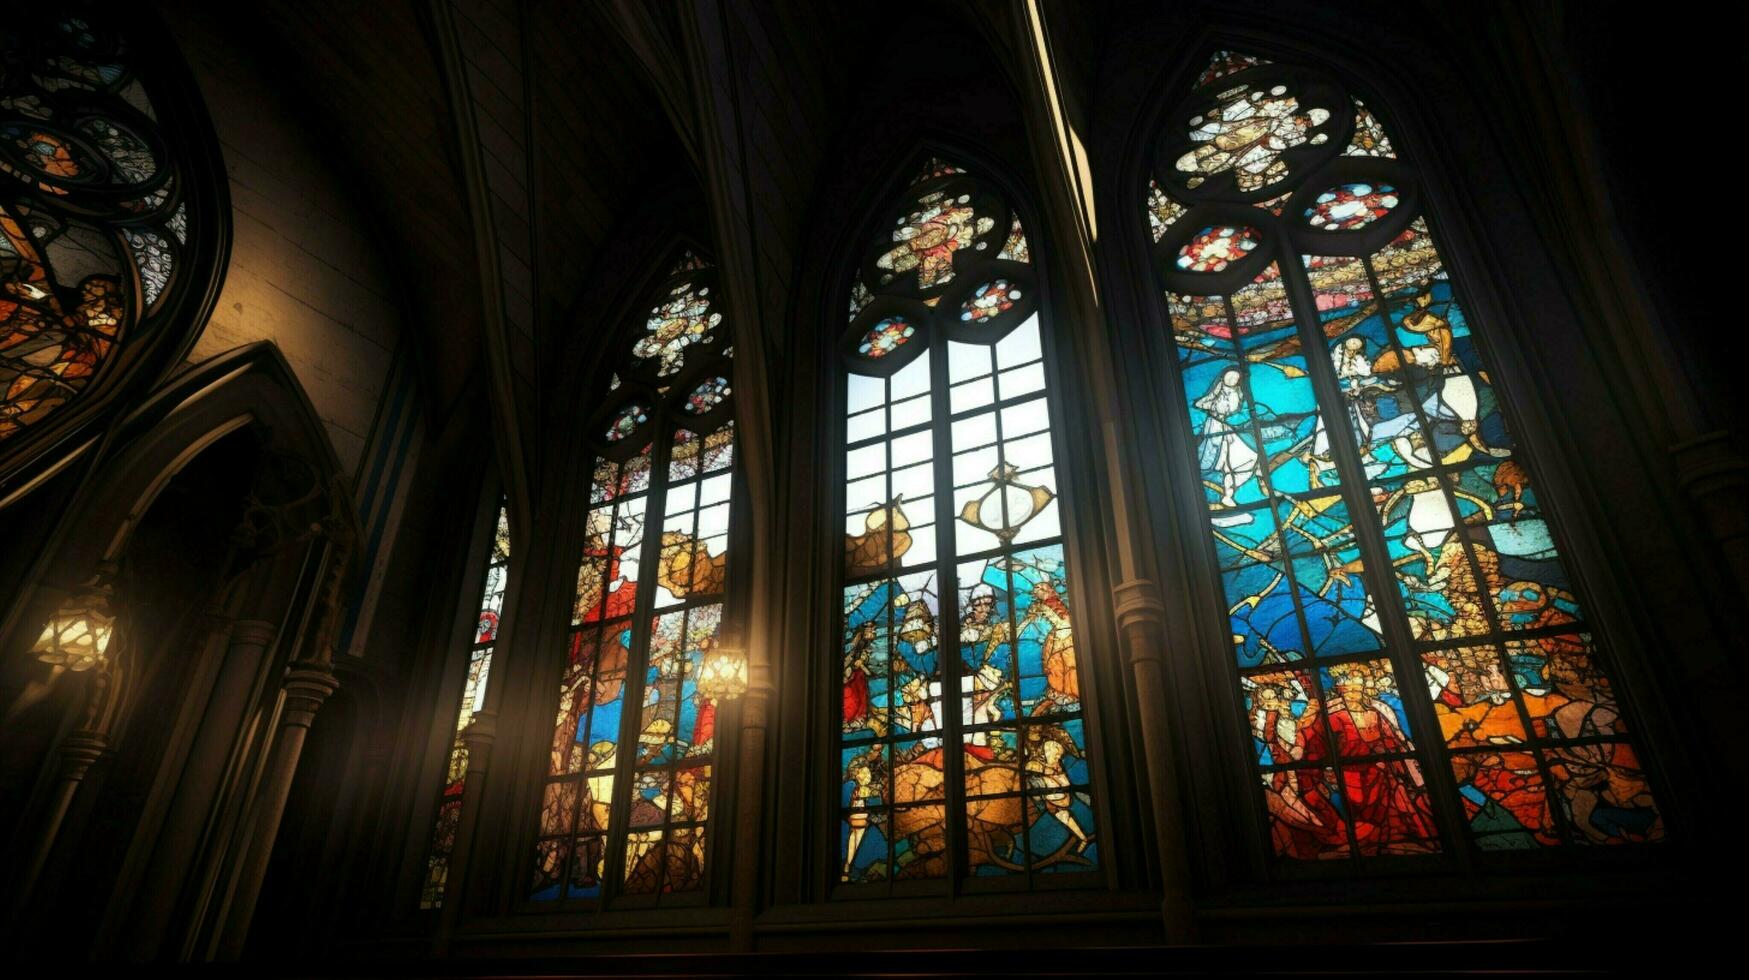 mittelalterlich Kapelle mit gotisch die Architektur befleckt Glas foto